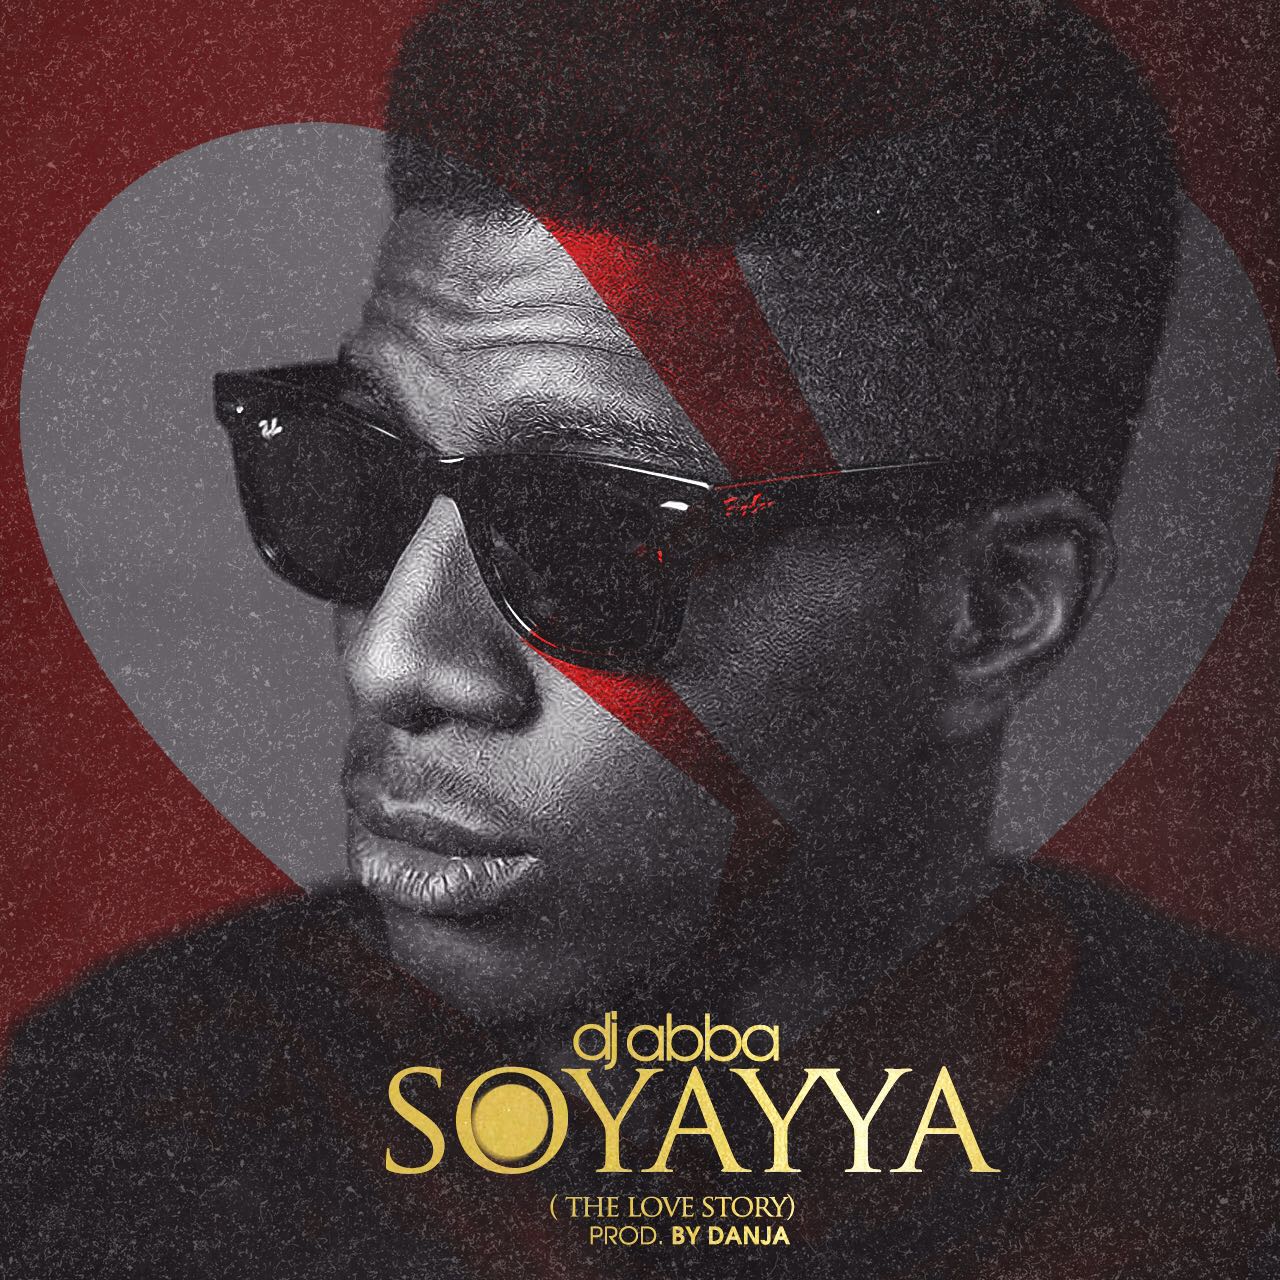 DJ A.B (Abba) – Soyayya (prod. Danja)